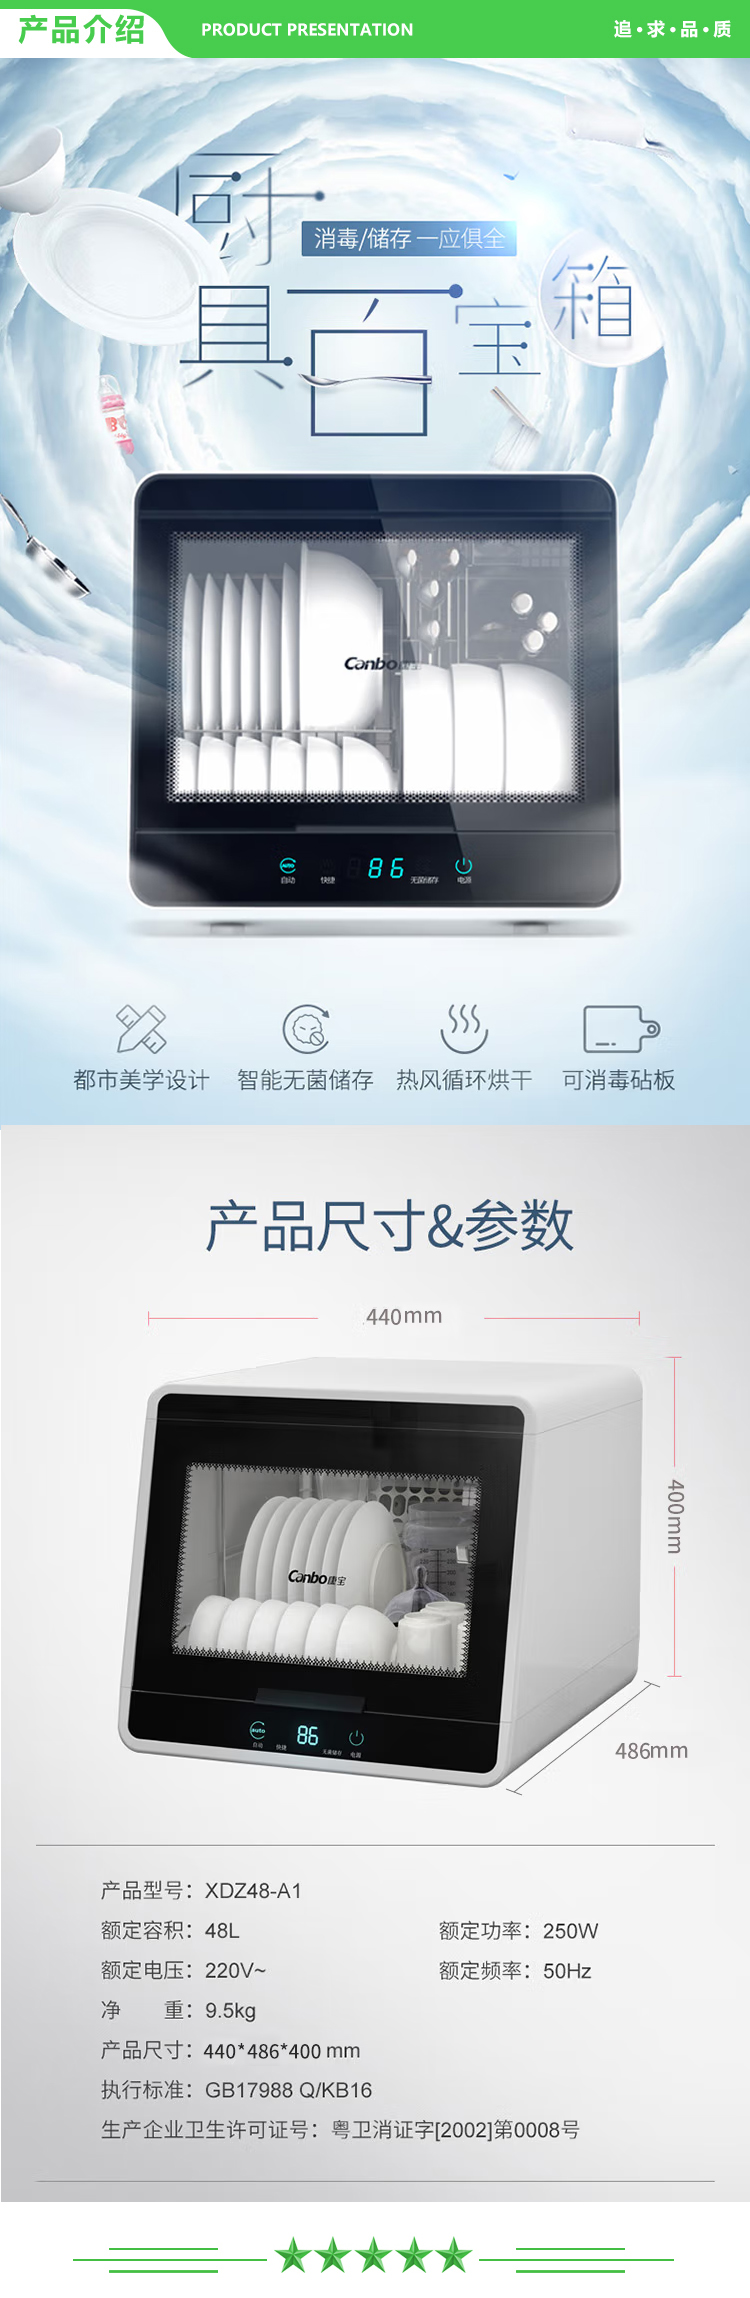 康宝 Canbo XDZ48-A1 消毒柜 家用小型迷你立式台式餐具碗筷桌面消毒碗柜 .jpg